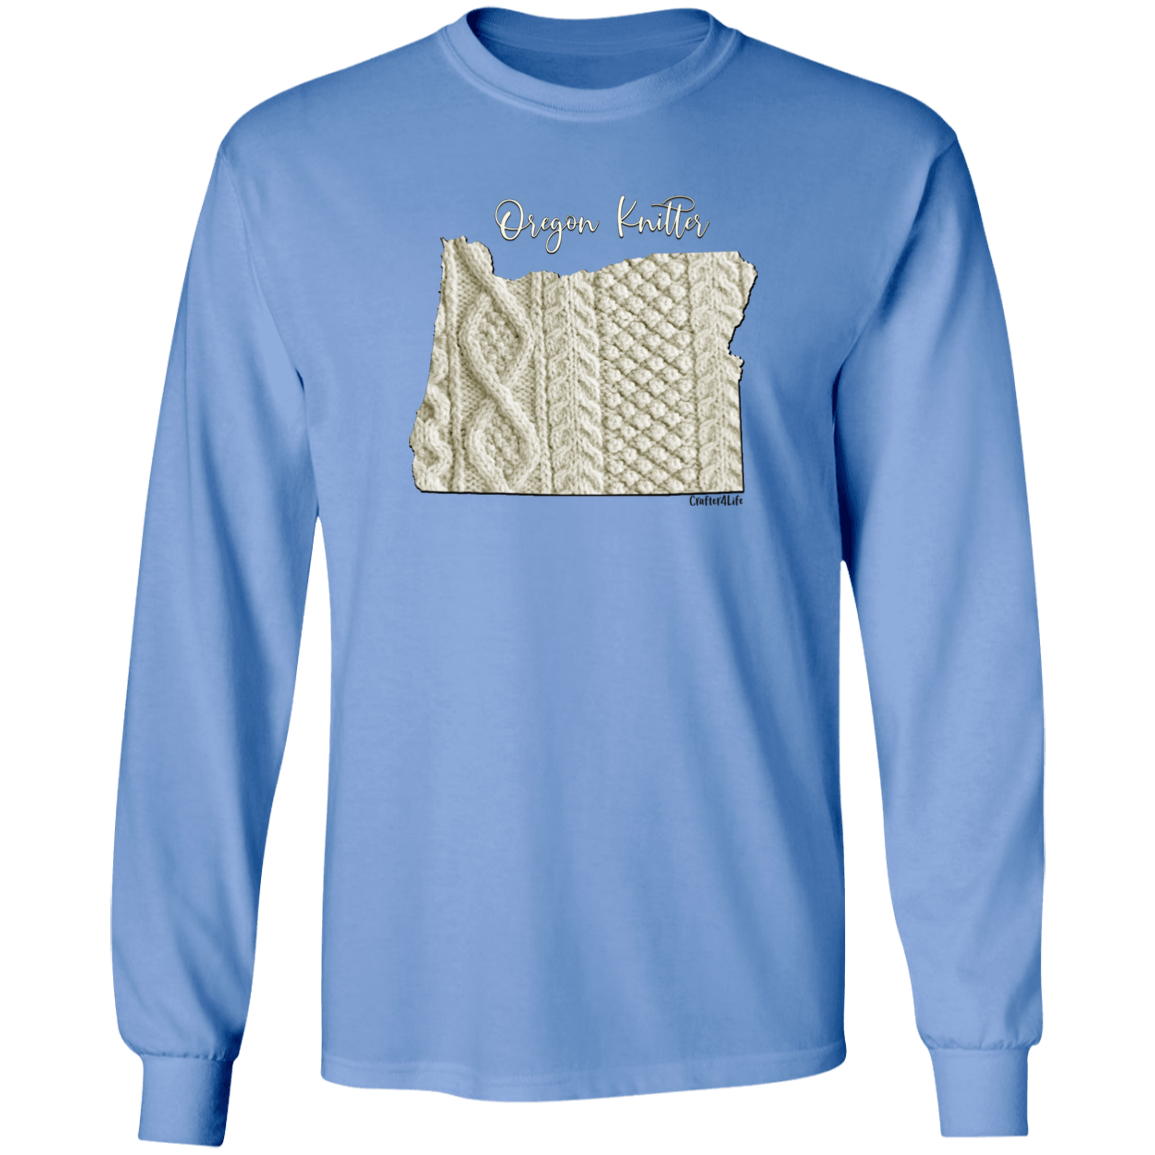 Oregon Knitter LS Ultra Cotton T-Shirt